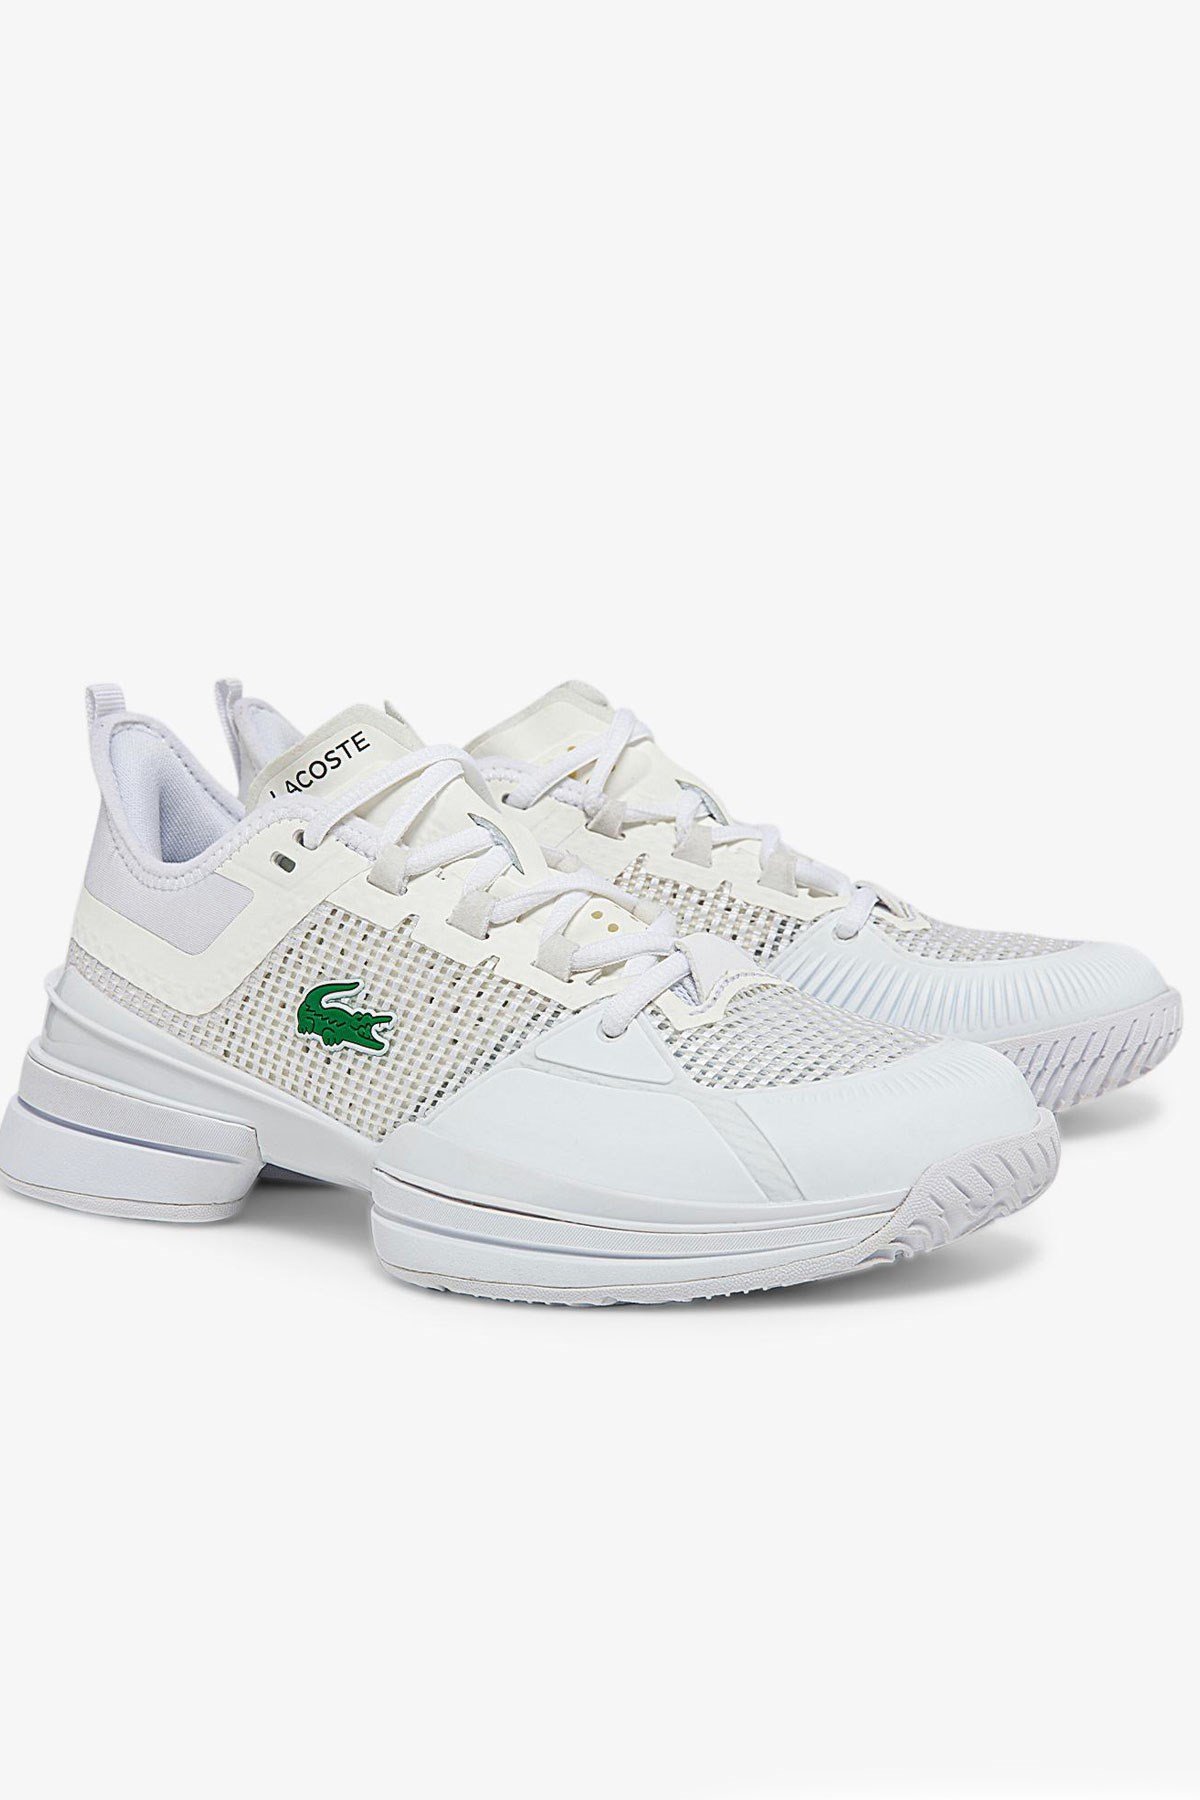 Lacoste AG-LT21 Ultra 0722 Beyaz Kadın Tenis Ayakkabısı